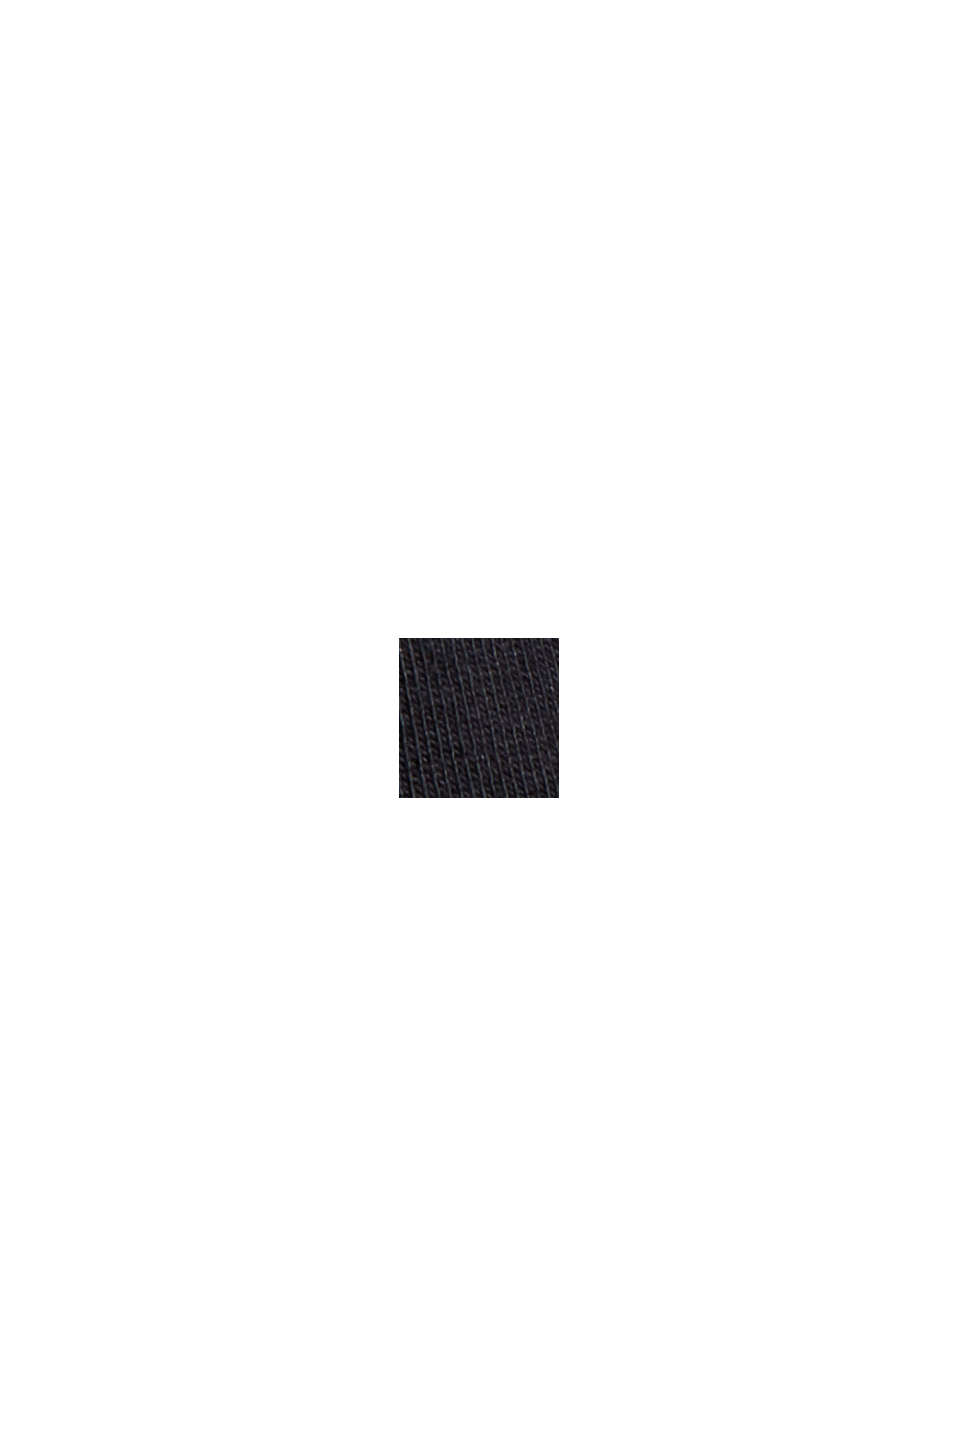 CURVY Langærmet bluse med rullekrave, økobomuld, BLACK, swatch